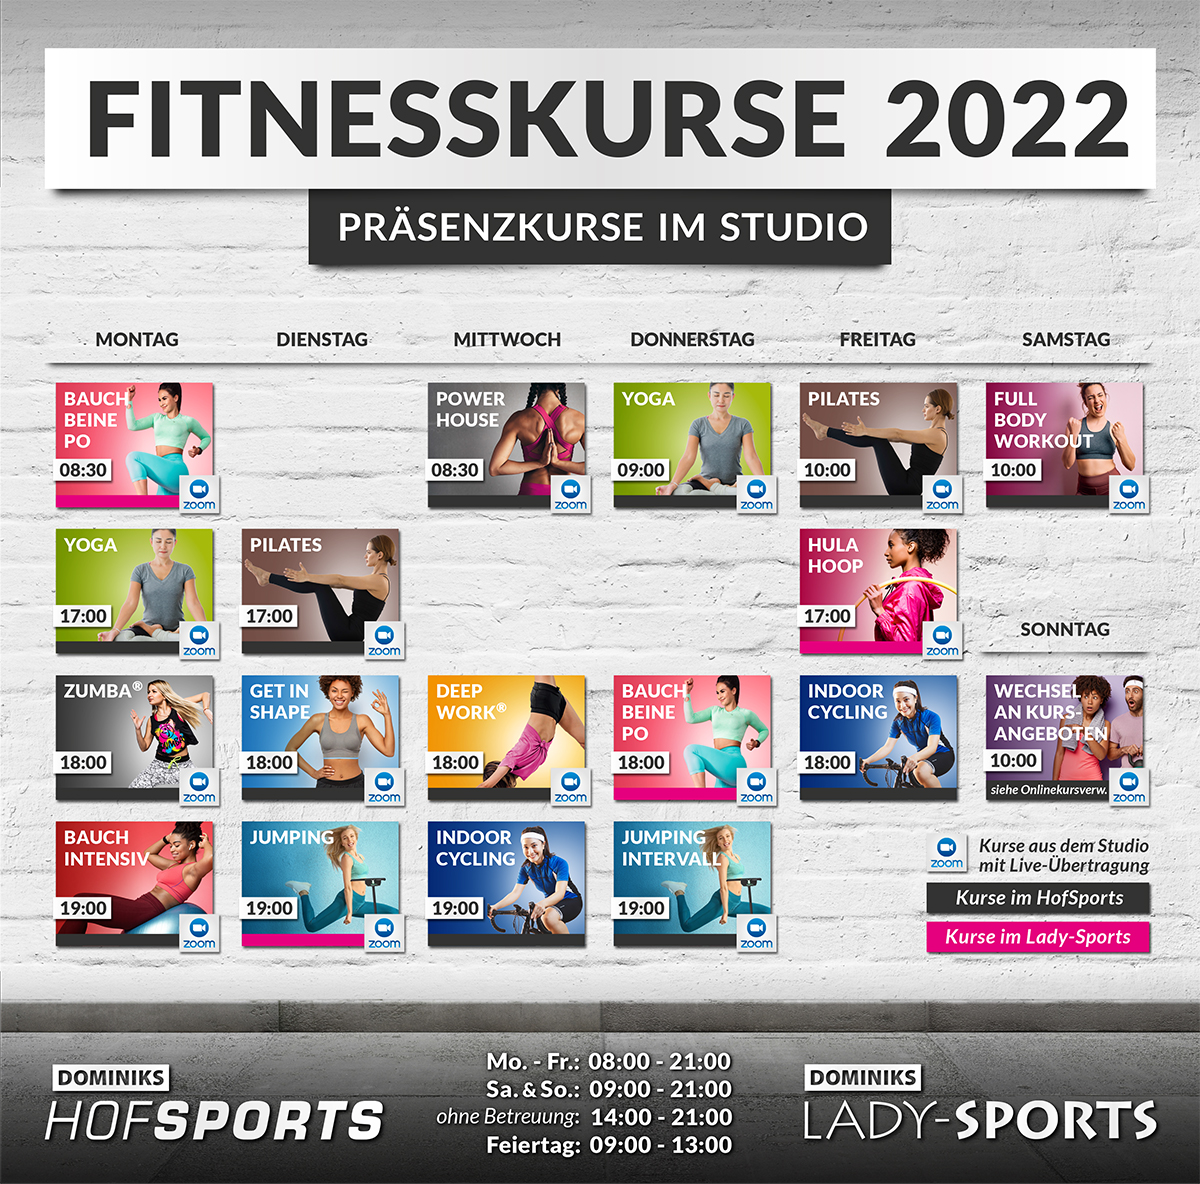 DOMINIKS-HofSports-Lady-Sports_Fitnesskurse 2022